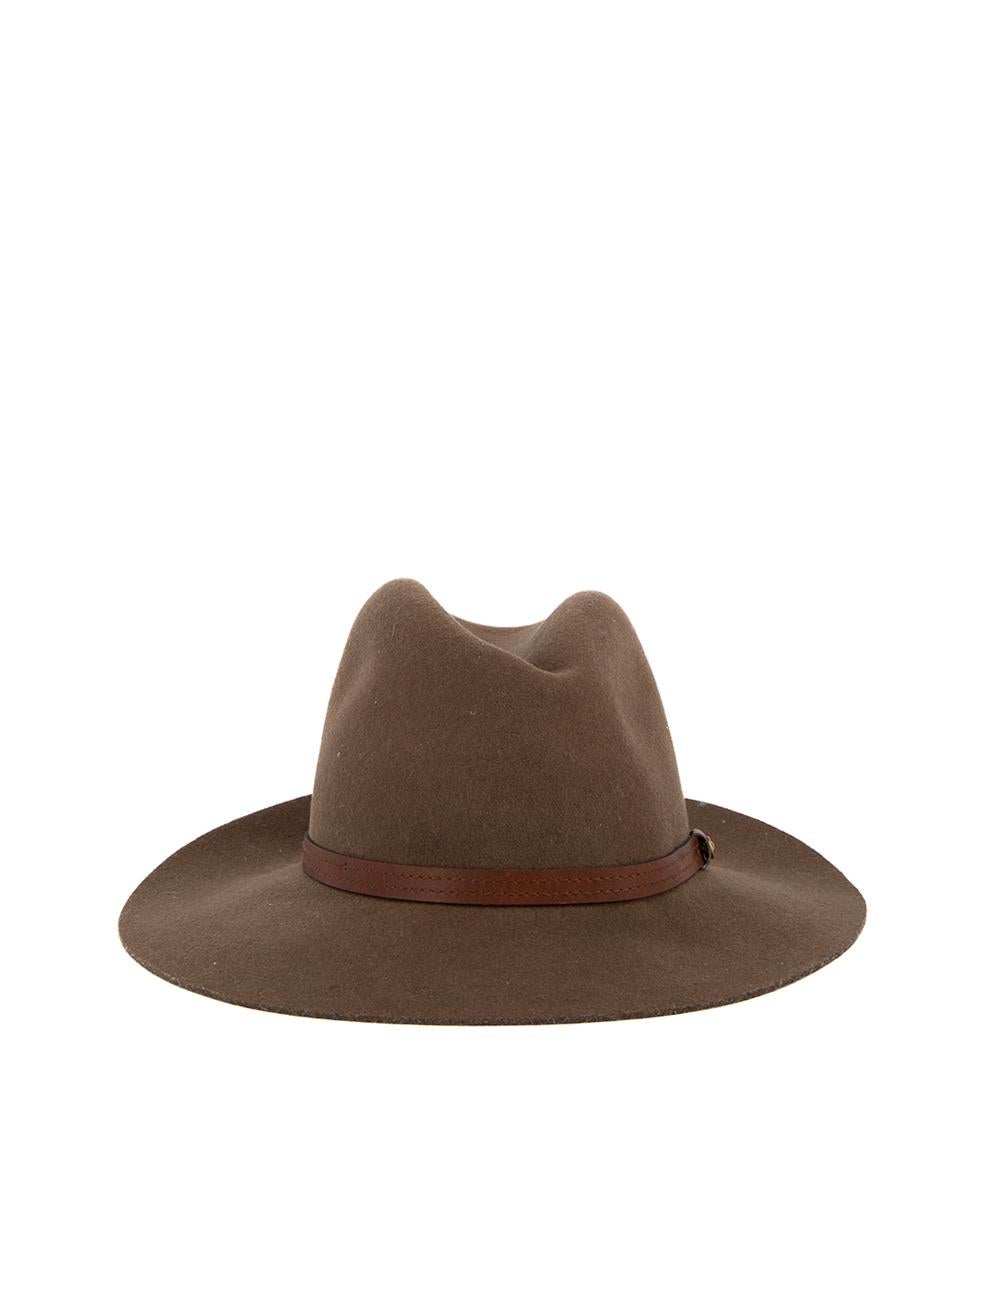 Pre-Loved Rag & Bone Women's Brown Wool Wide Brim Hat 1